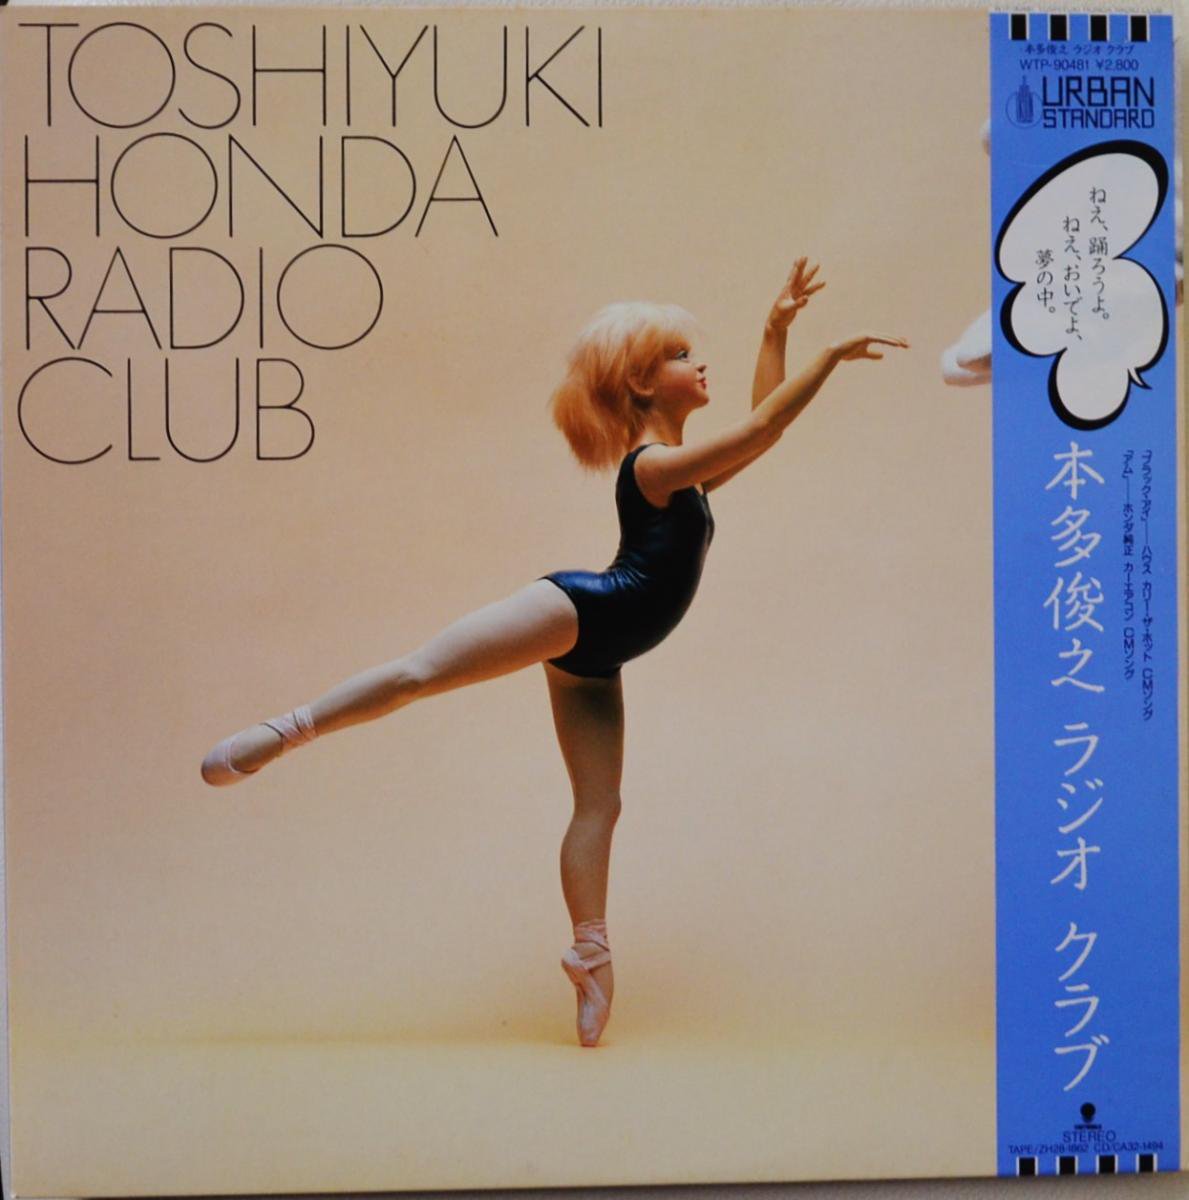 本多俊之 TOSHIYUKI HONDA / ラジオ クラブ RADIO CLUB (LP) - HIP TANK RECORDS